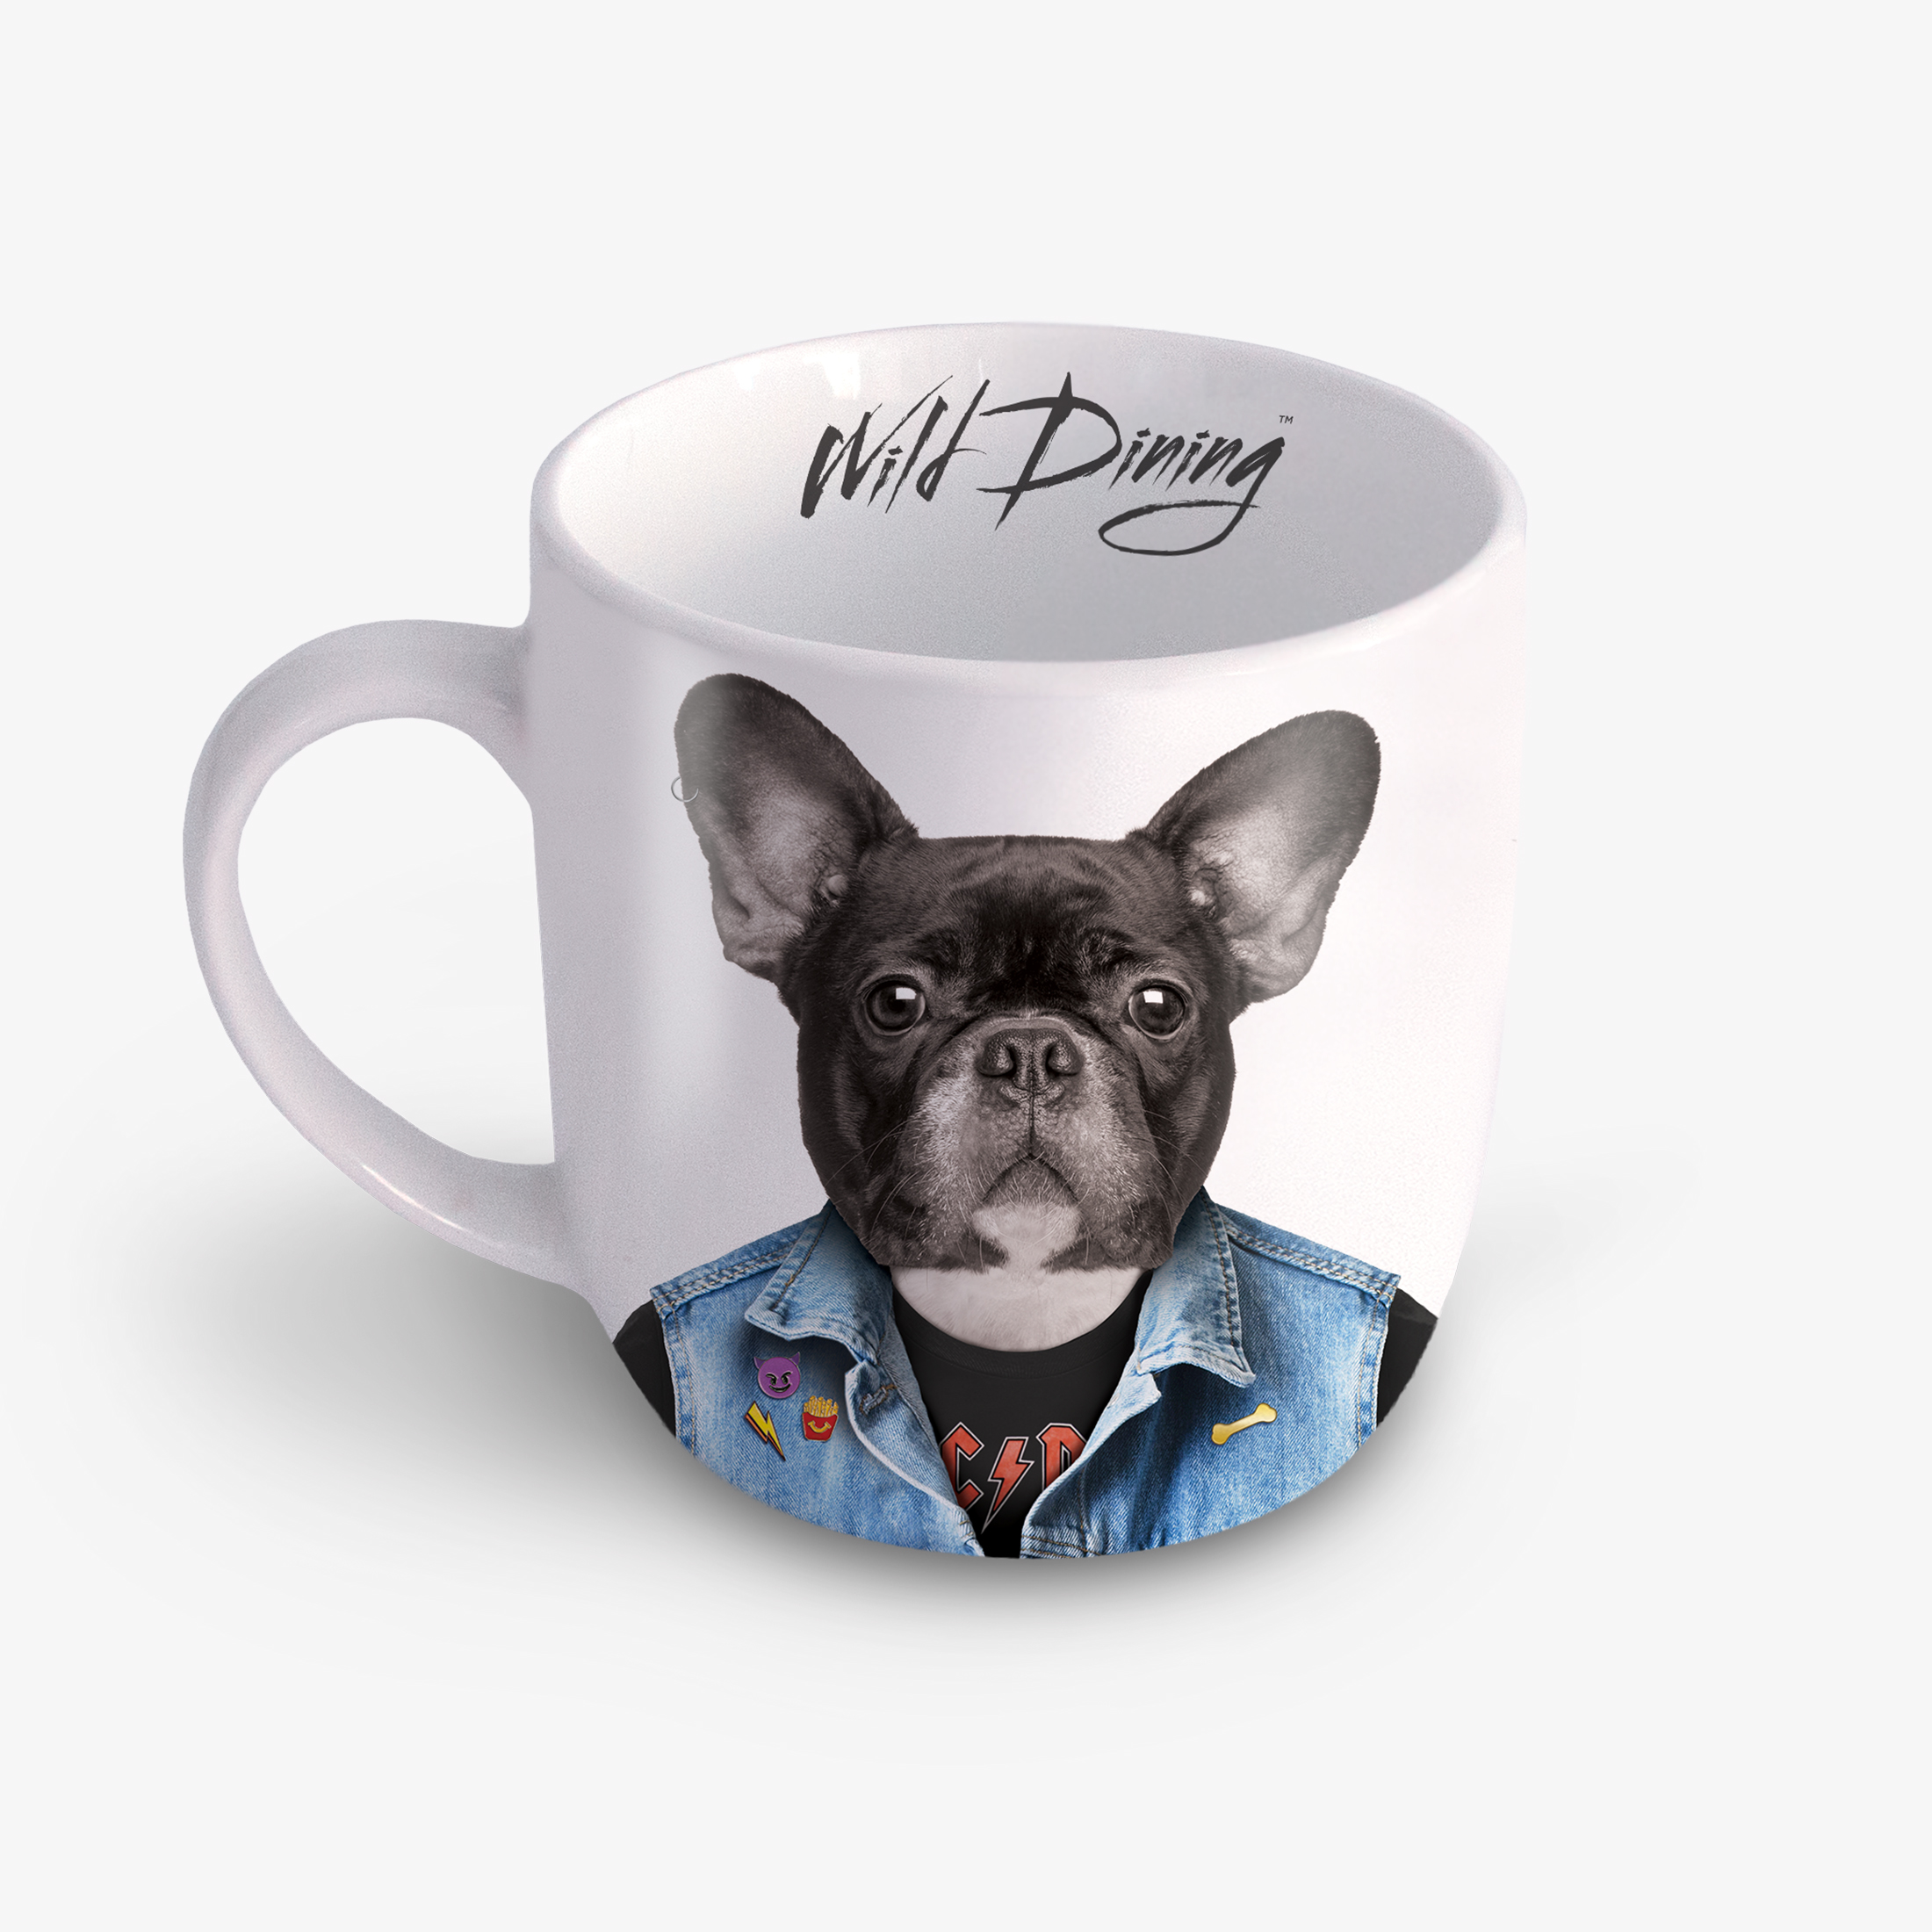 Wild Dining Mug Dog 